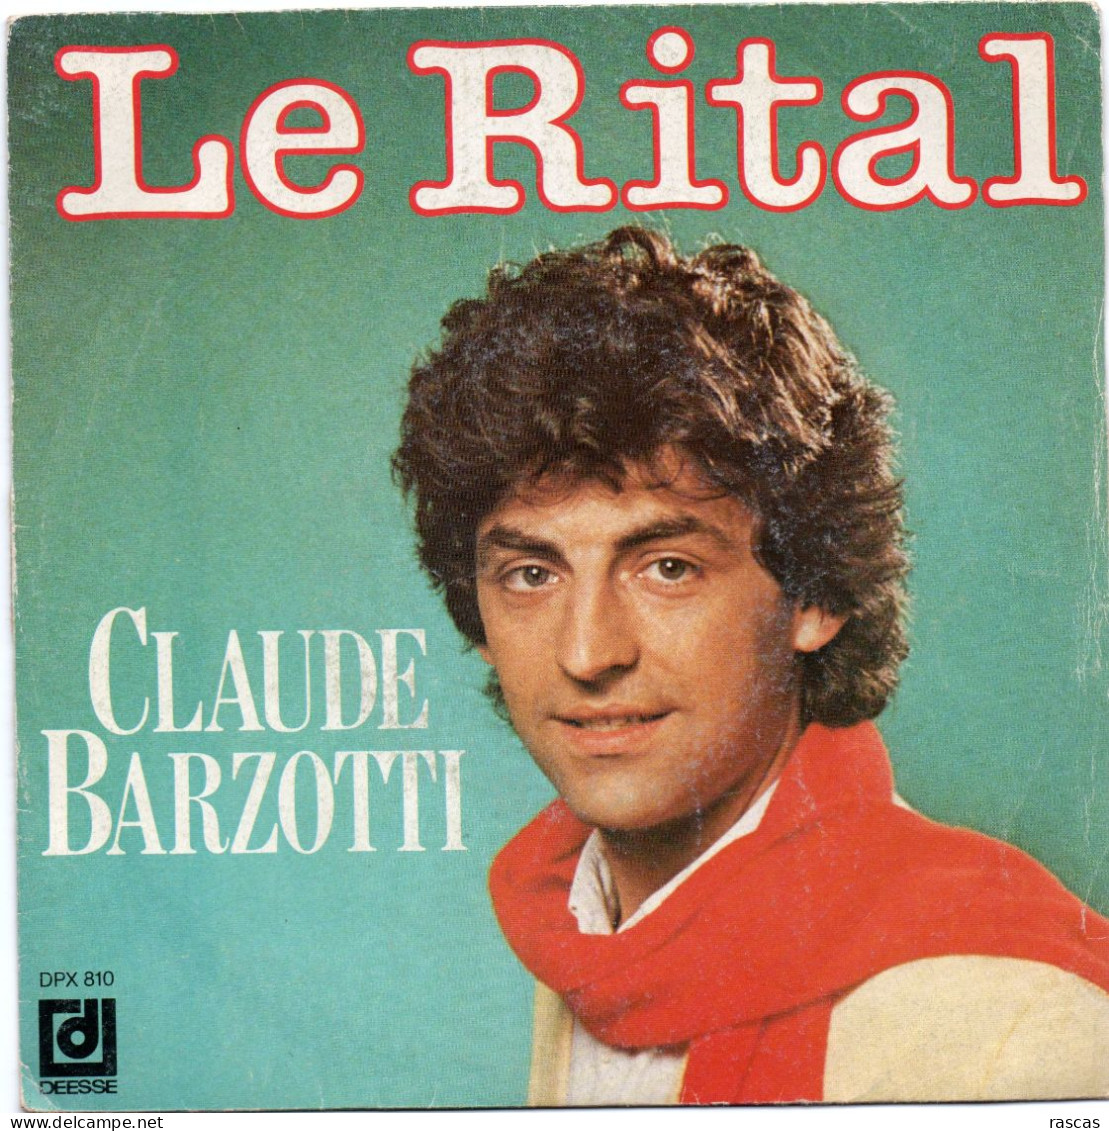 DISQUE VINYL 45 T DU CHANTEUR FRANCO ITALIEN CLAUDE BARZOTTI - LE RITAL - Autres - Musique Française